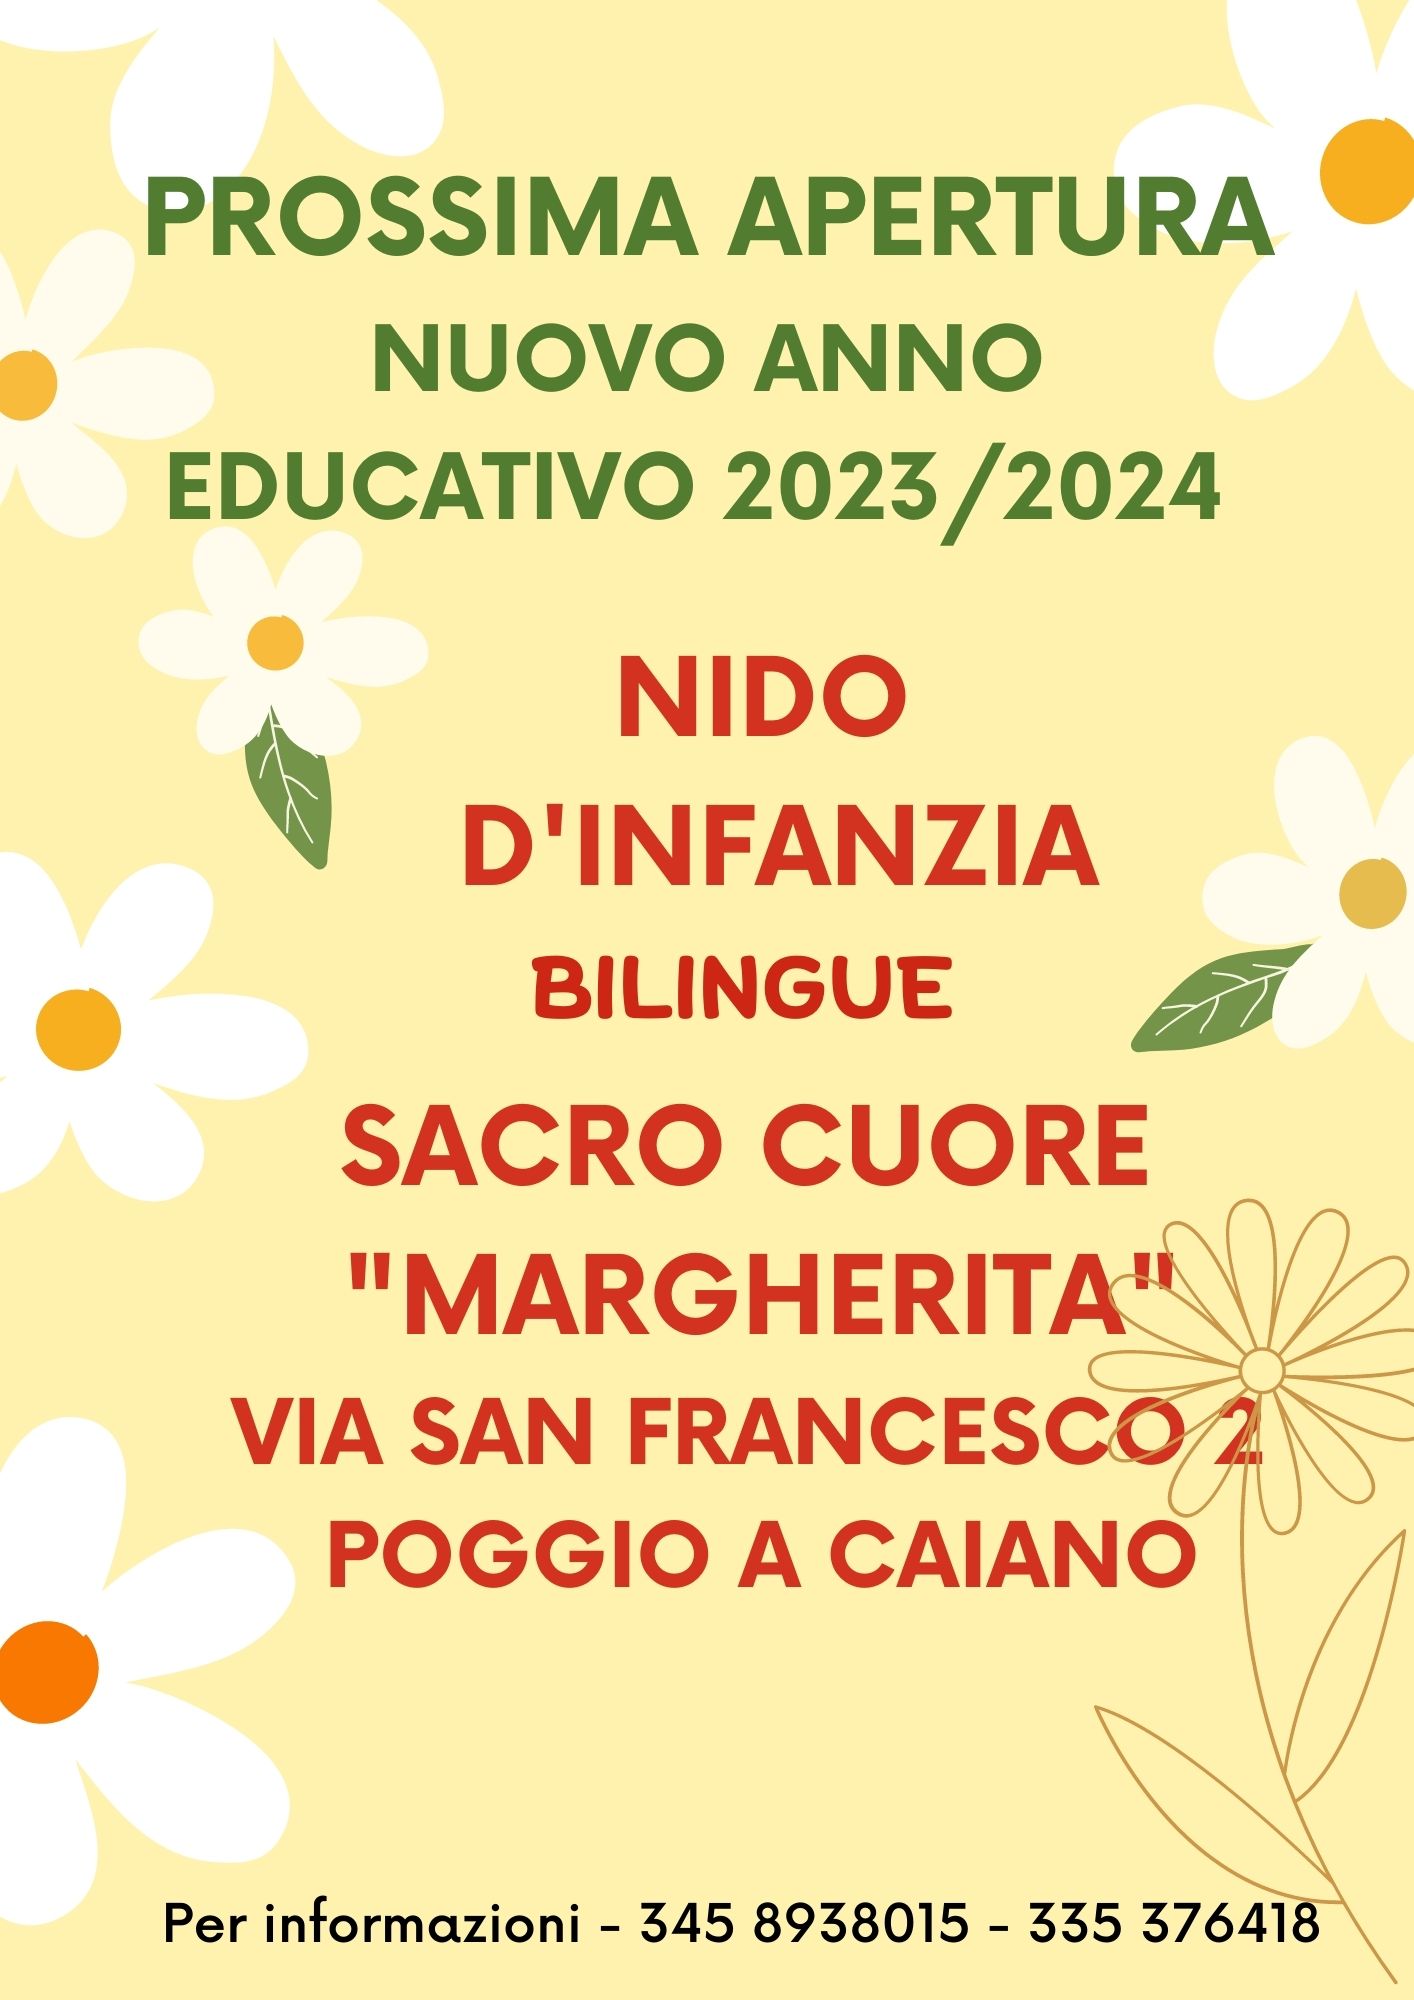 Nuova apertura Anno Educativo 2023/2024 NIDO D’INFANZIA BILINGUE SACRO CUORE “MARGHERITA”